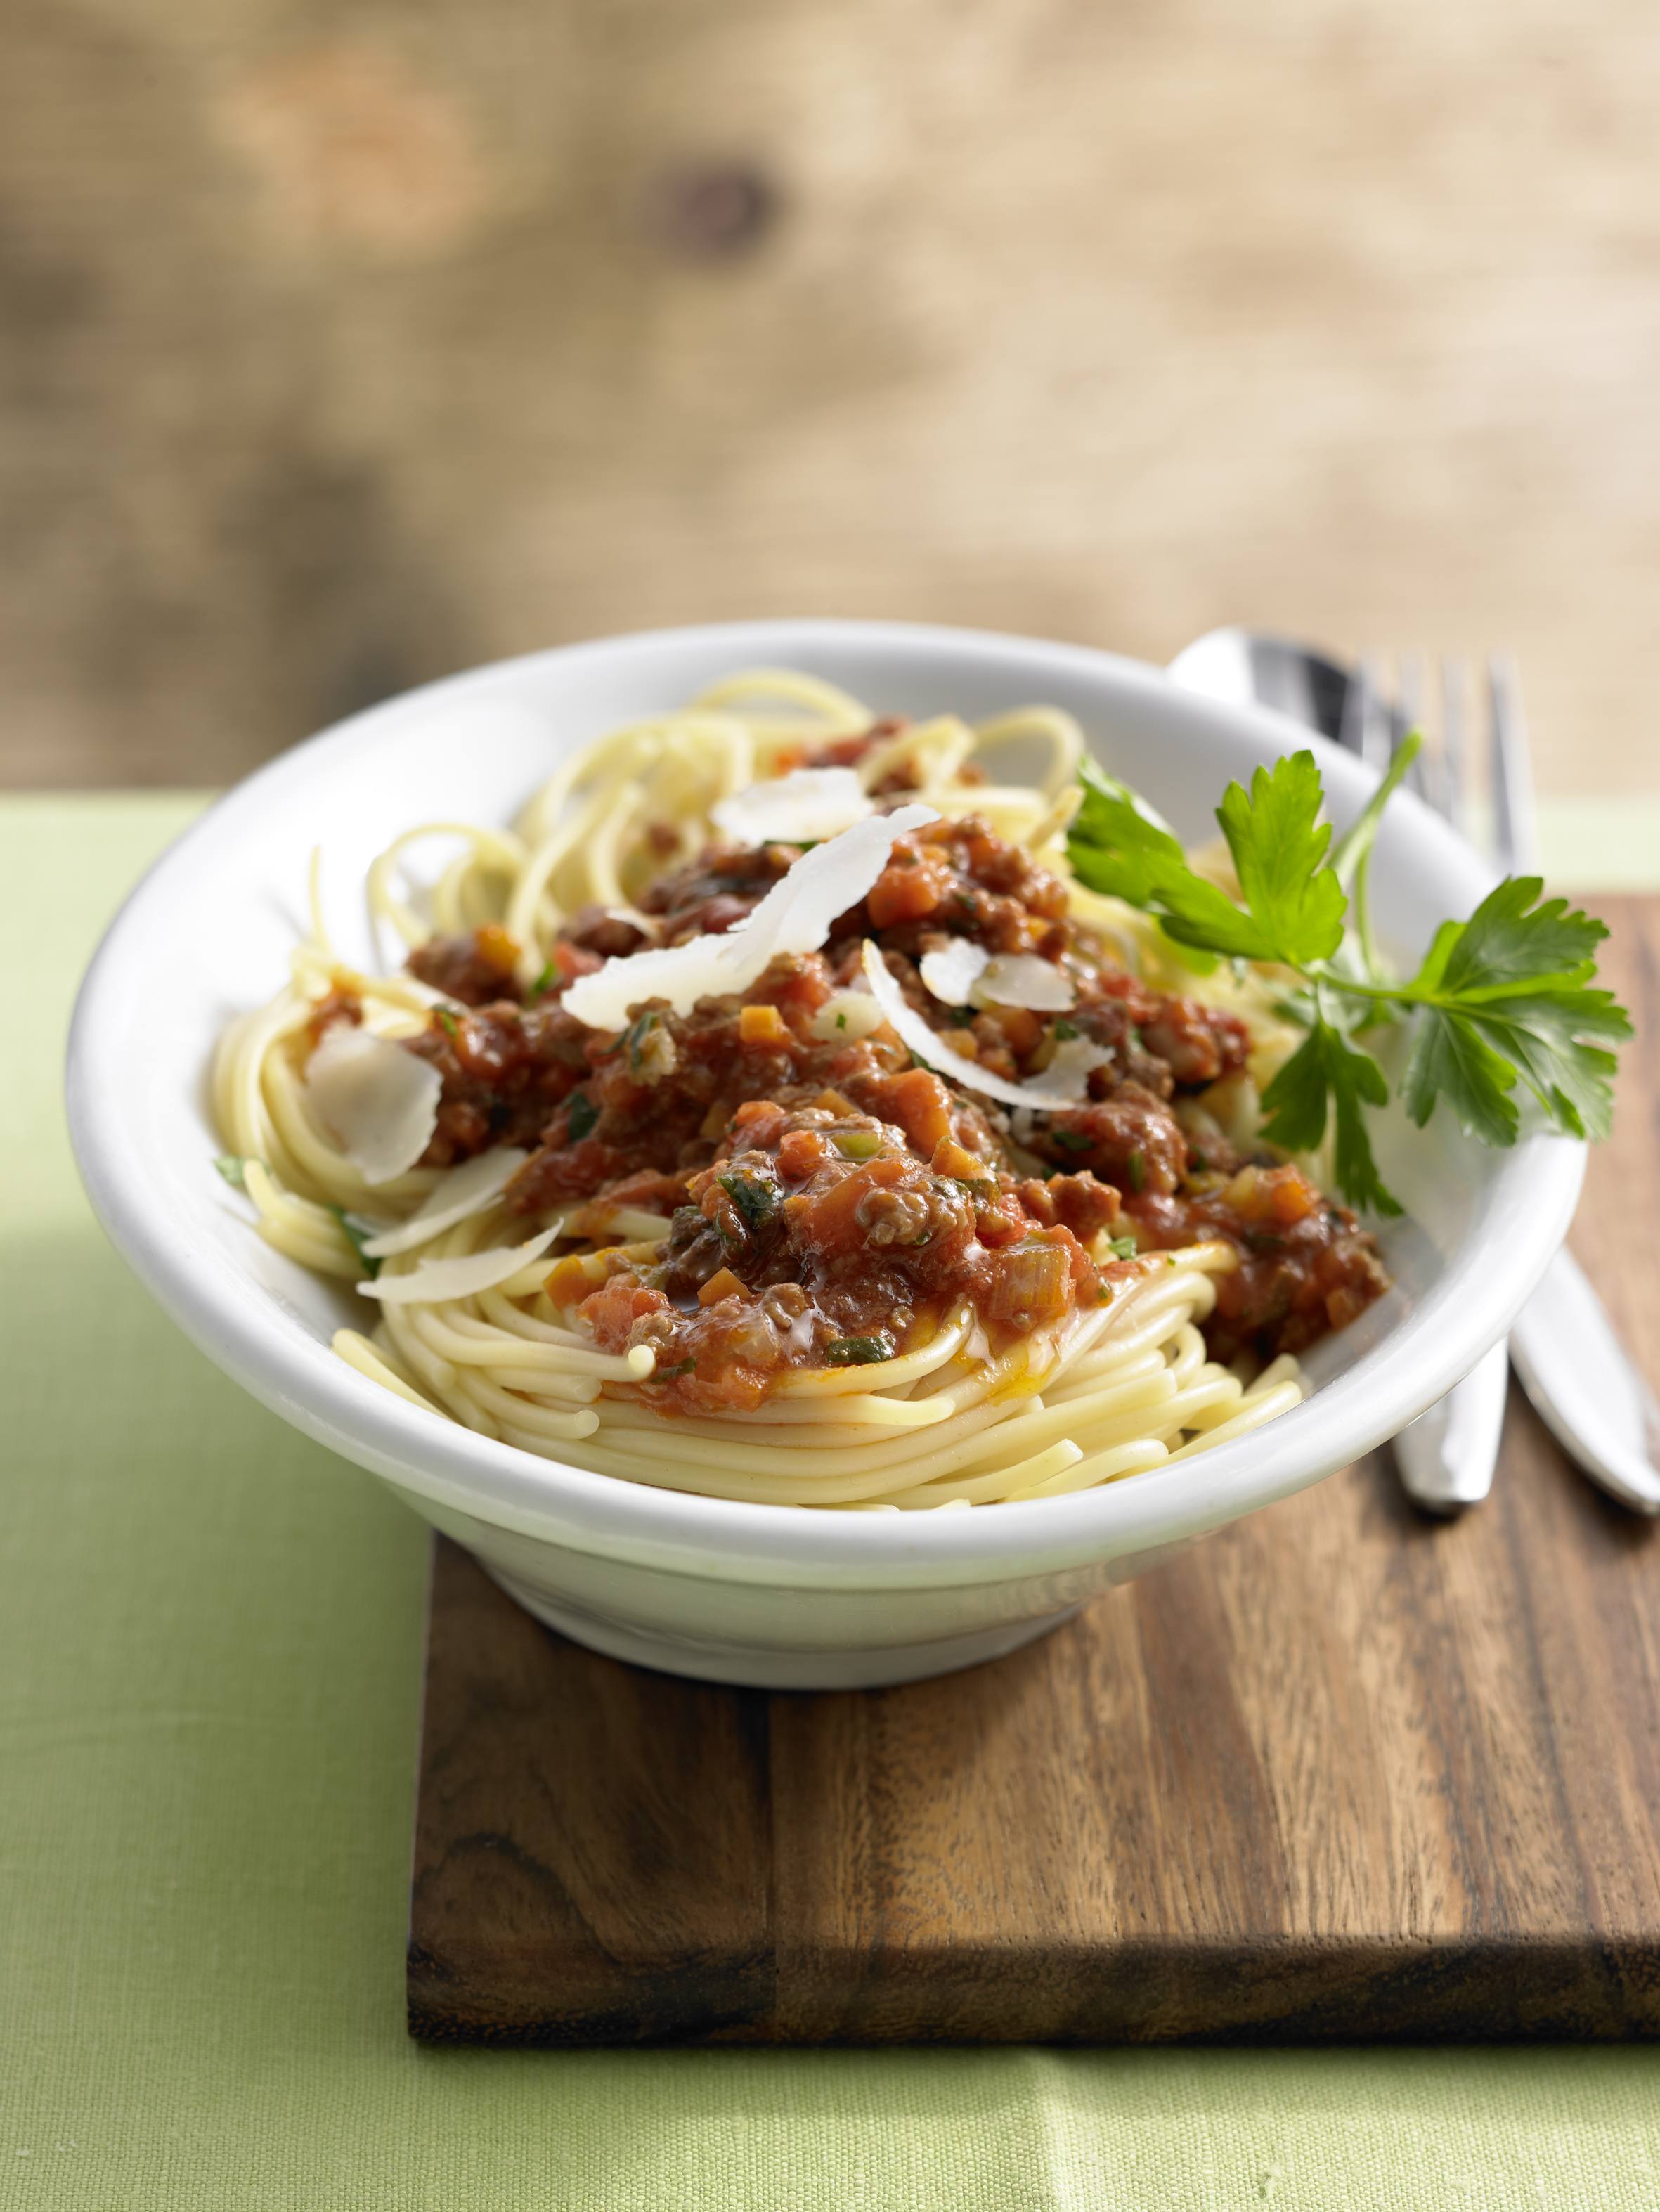 Knorr - Spaghetti Asciutta mit Karotten, Sellerie, Lauch und Faschiertem